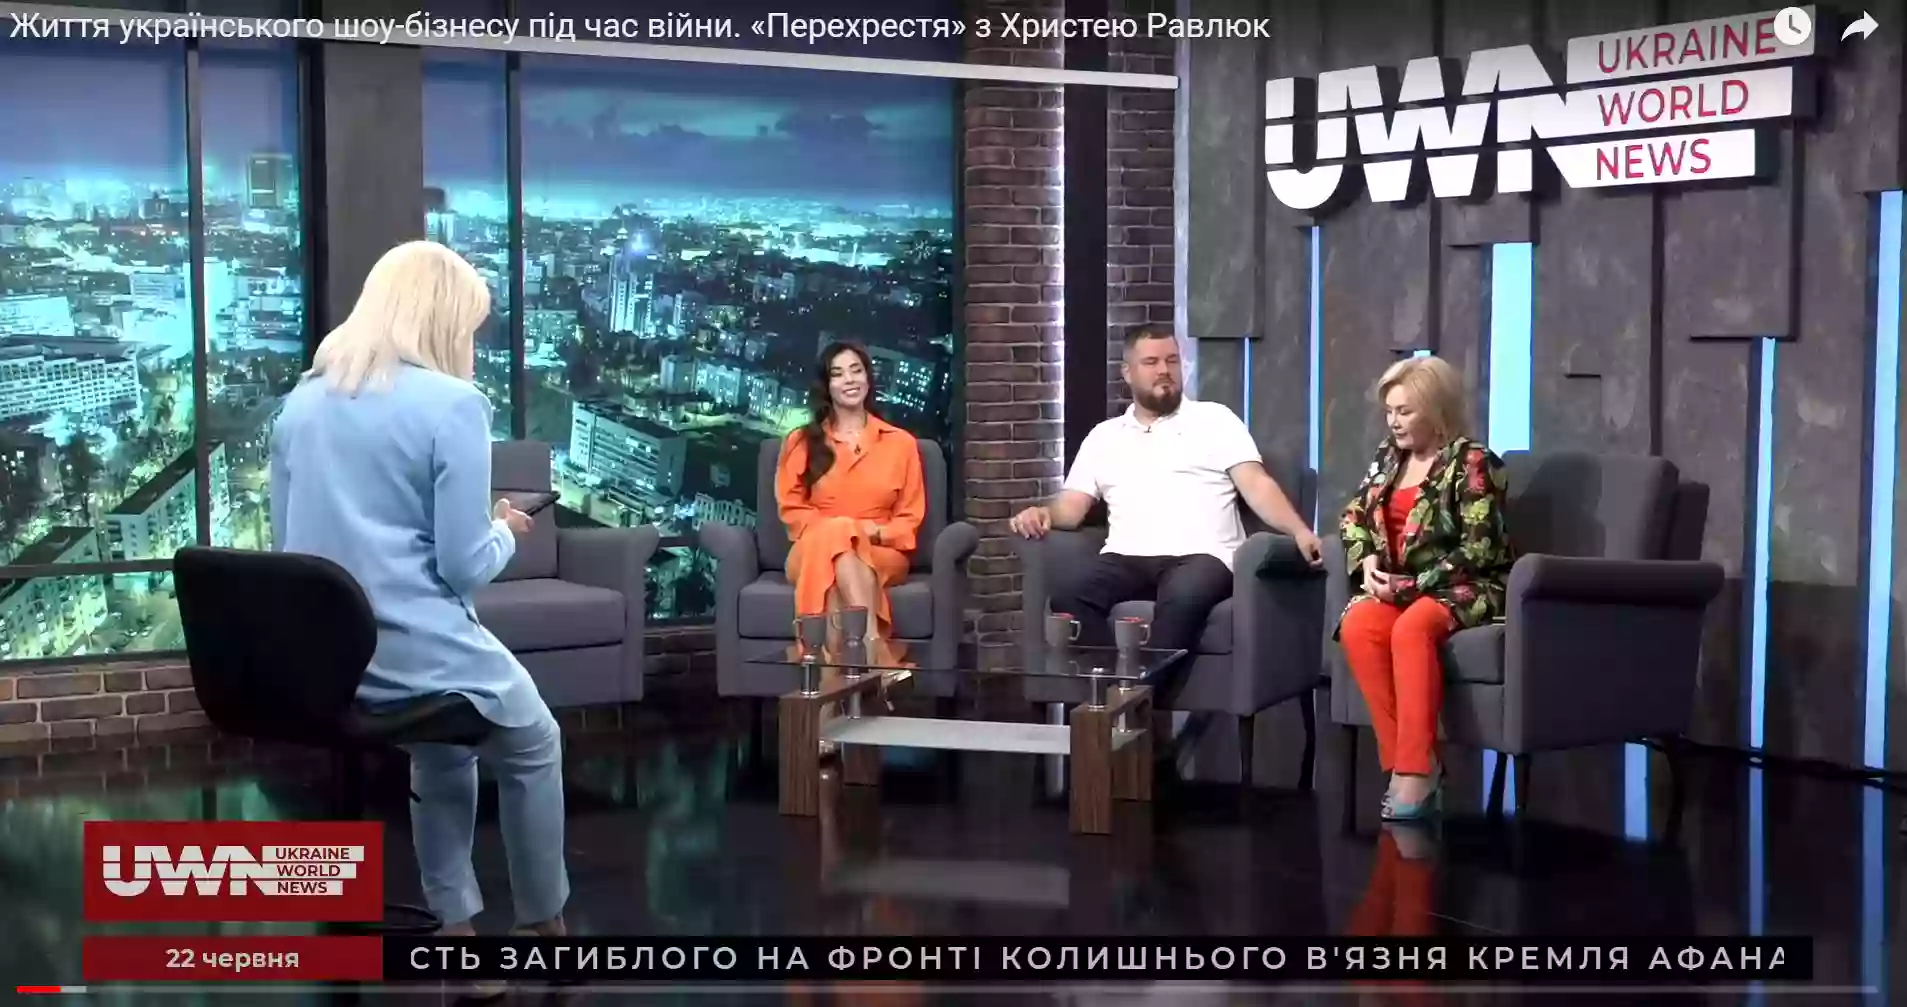 Ukraine World News: канал із Бенюком, Жидковим і «стійкою національною позицією»